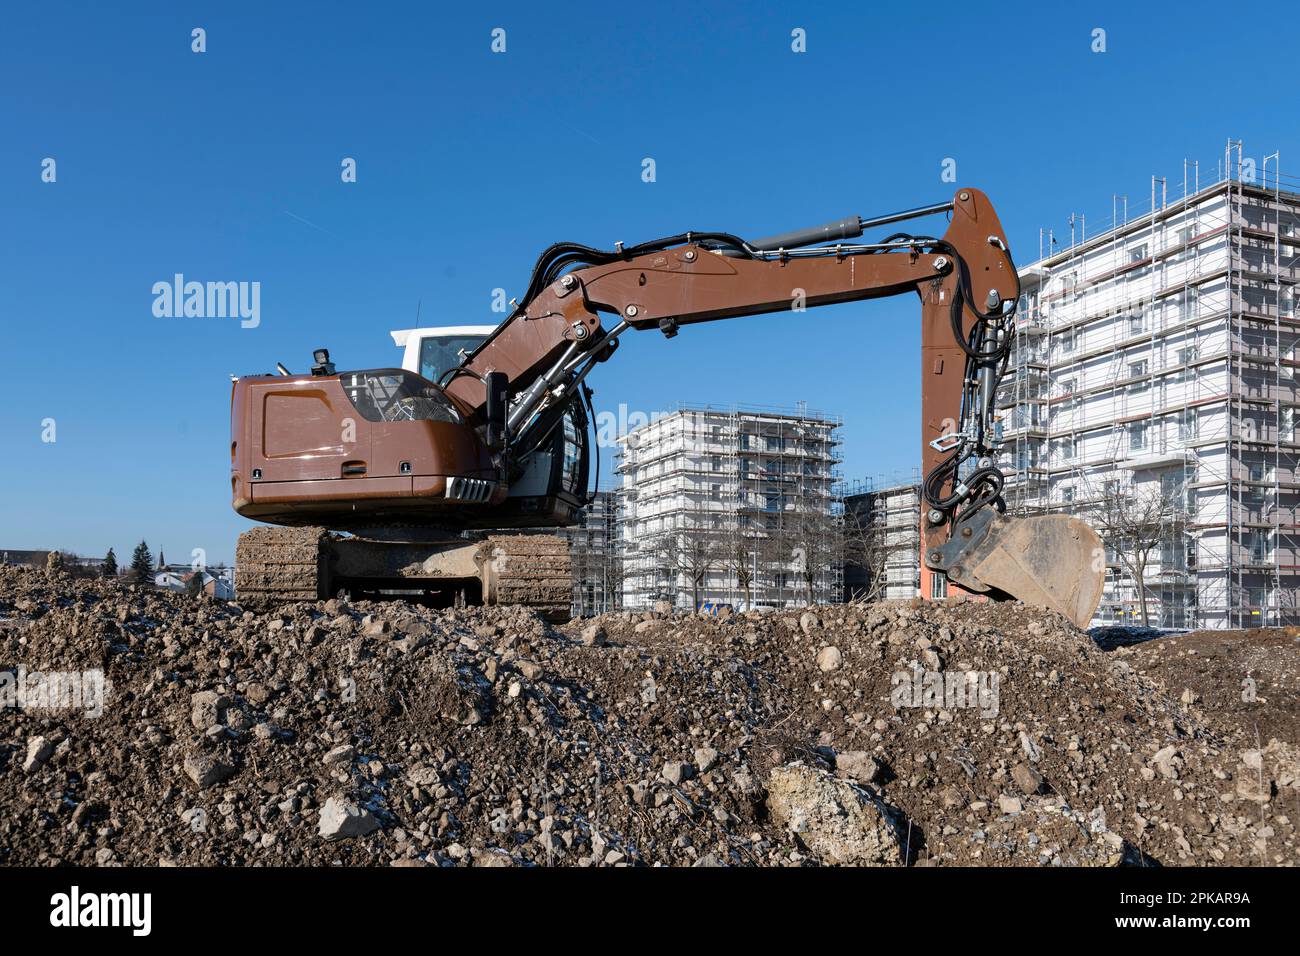 La pelle hydraulique marron se trouve sur un grand chantier de construction avec des bâtiments de construction à plusieurs étages en arrière-plan Banque D'Images